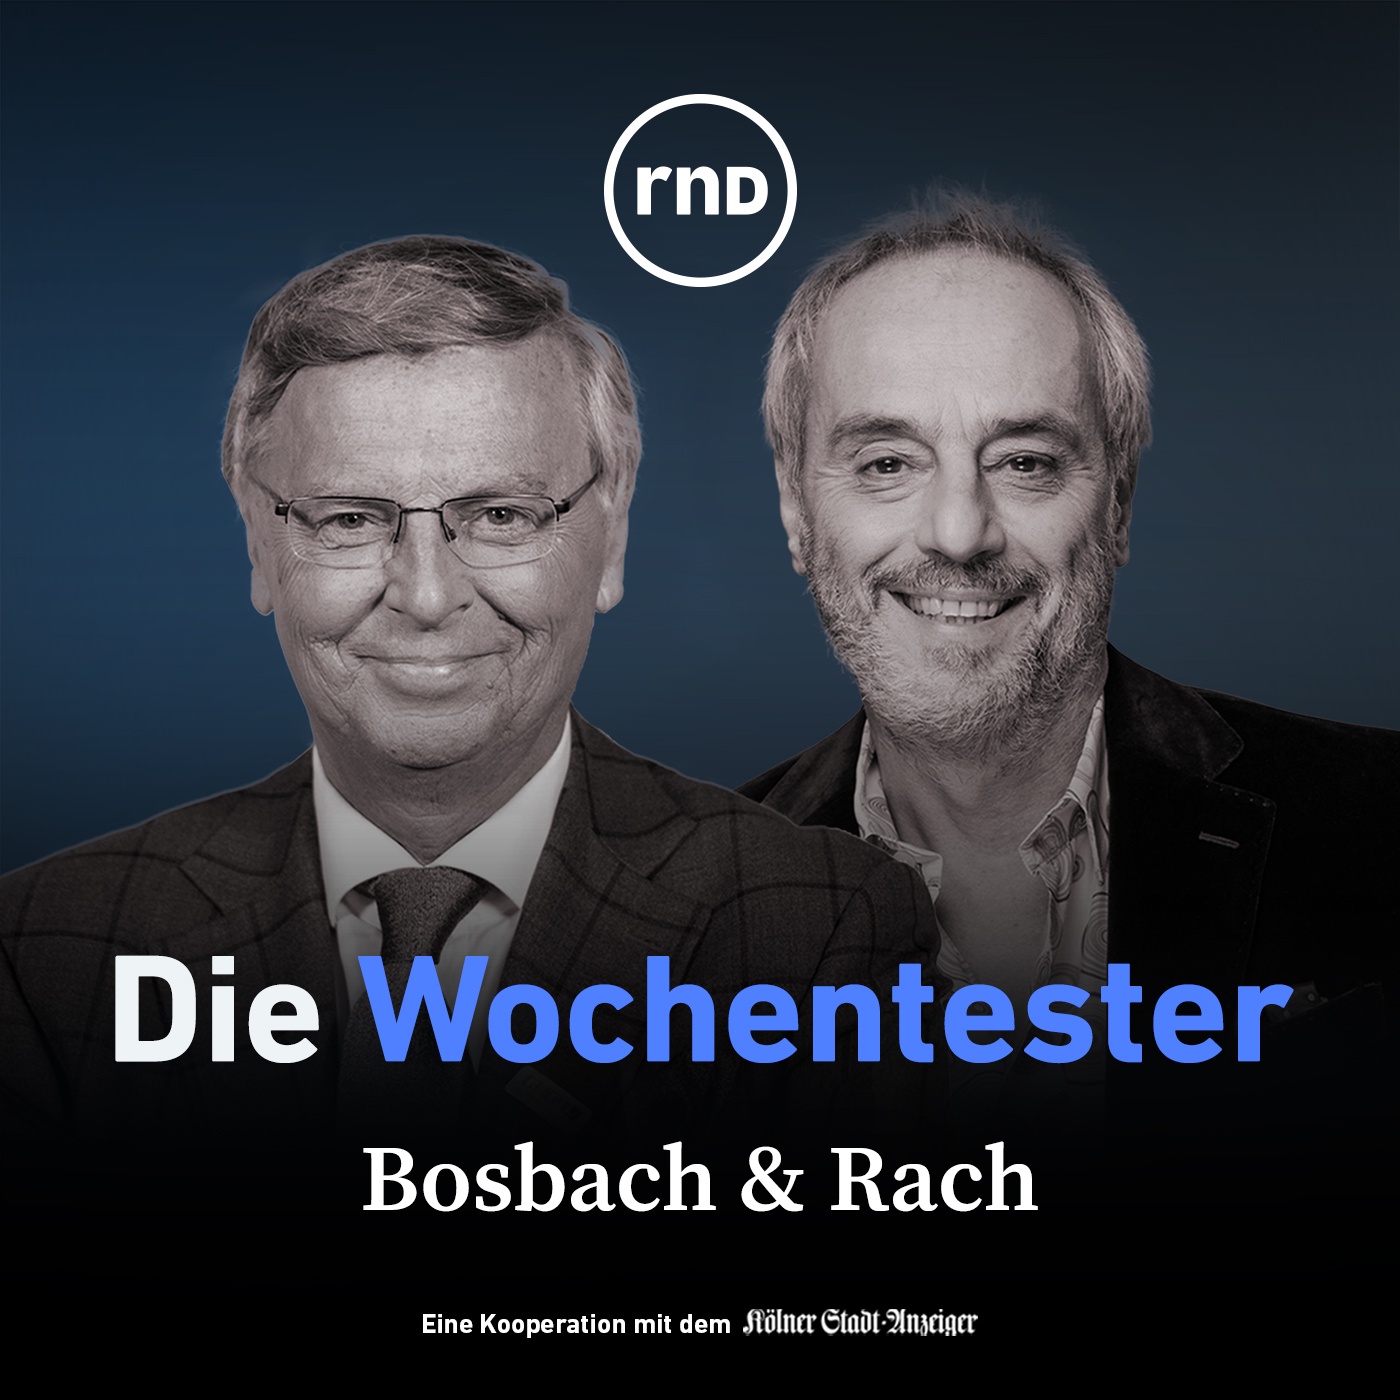 Jörges & Rach - Das Interview - mit Neurowissenschaftler Dr. Henning Beck